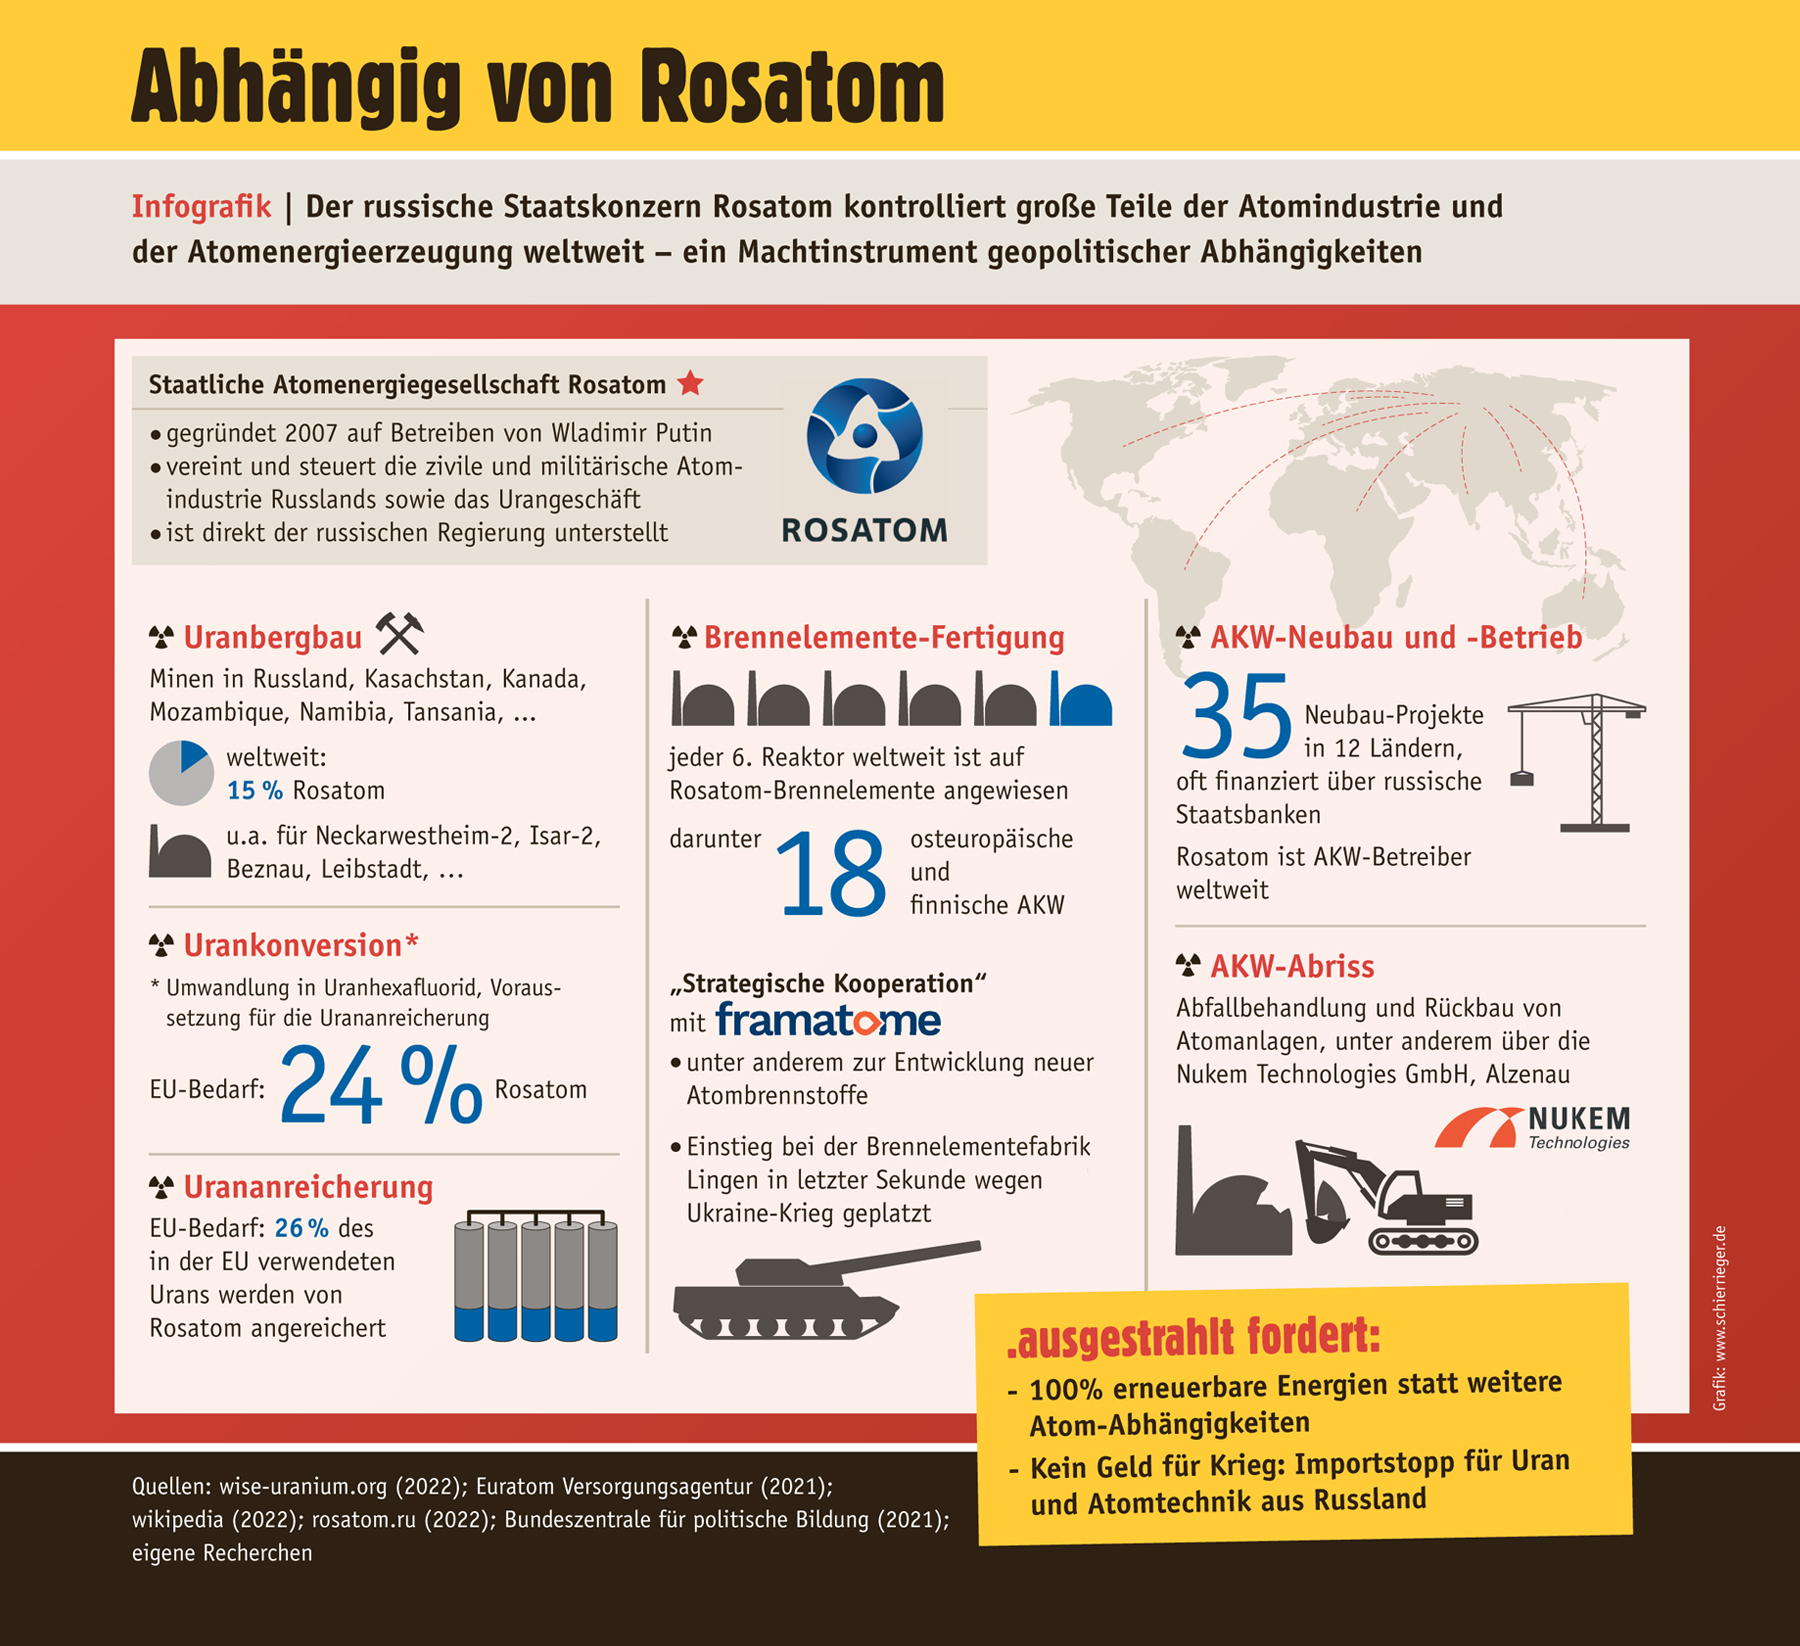 Infografik zur Abhängigkeit vom russischen Staatskonzern Rosatom